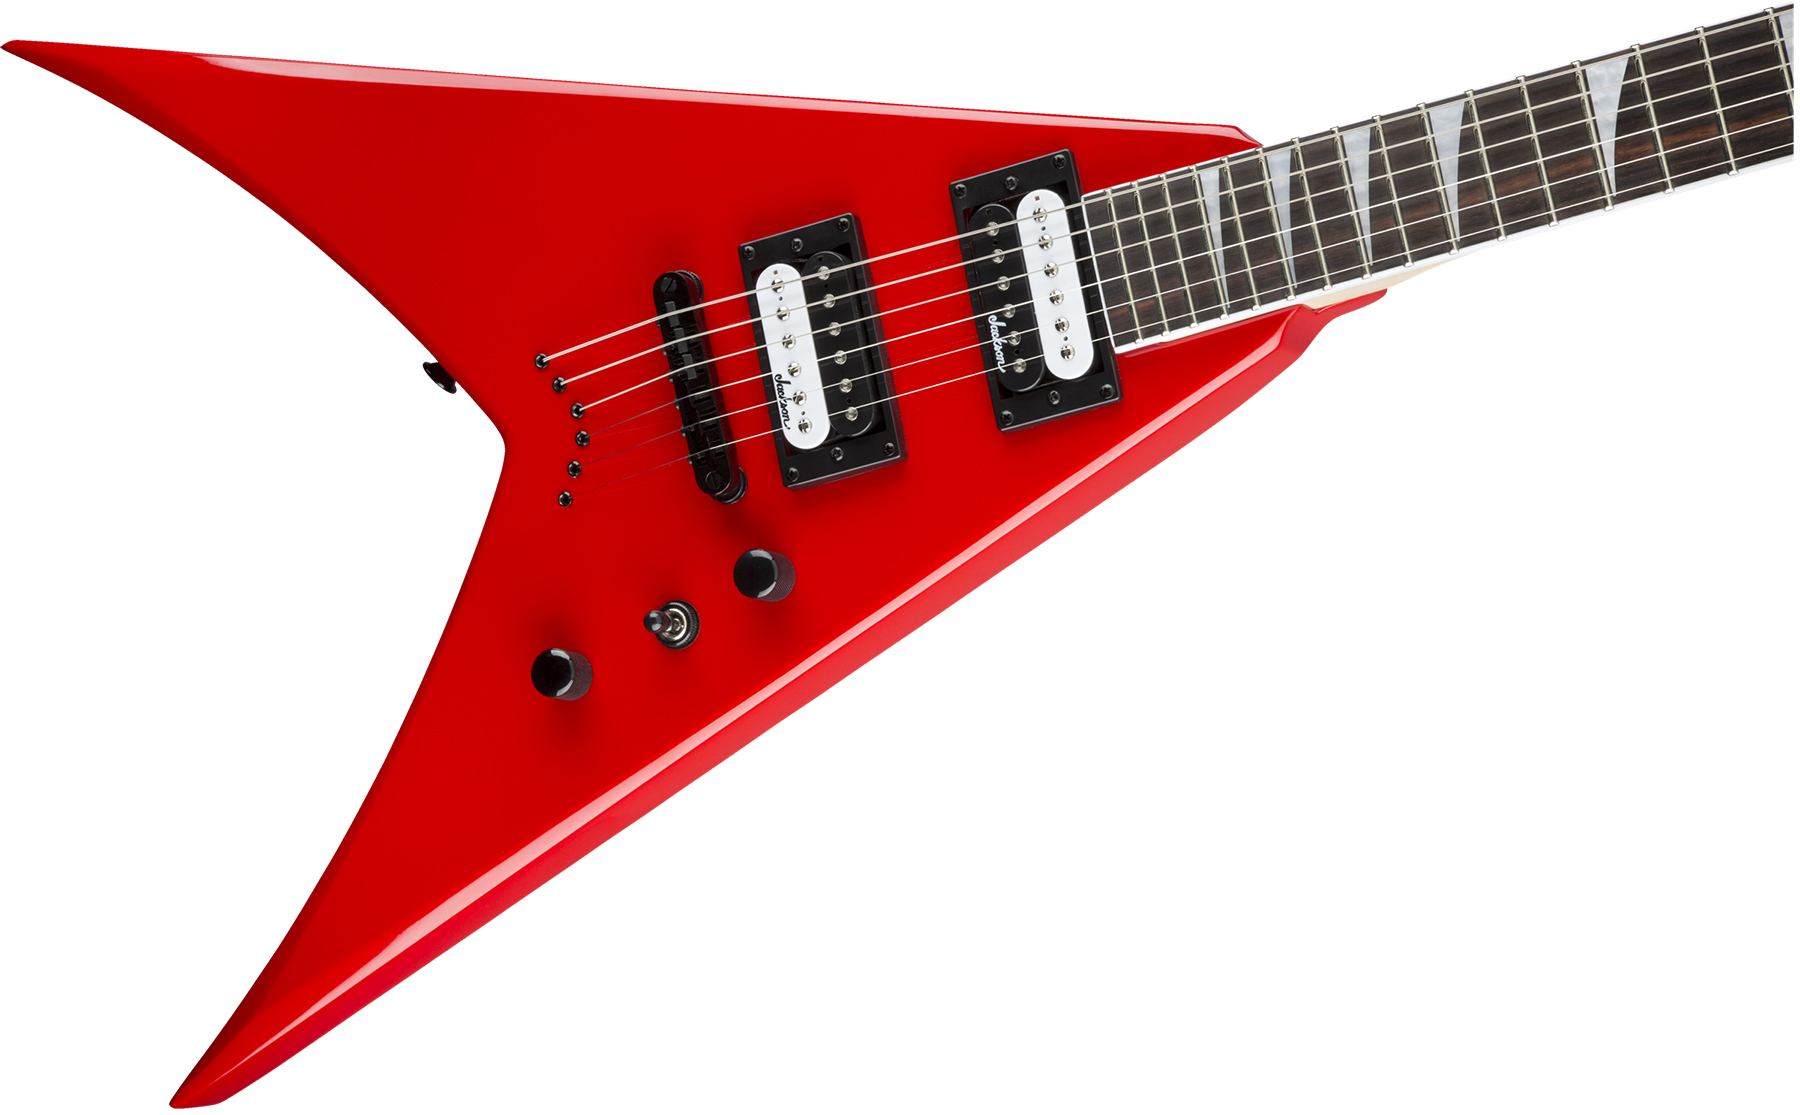 Jackson King V Js32t 2h Ht Ama - Ferrari Red - Metal electric guitar - Variation 2